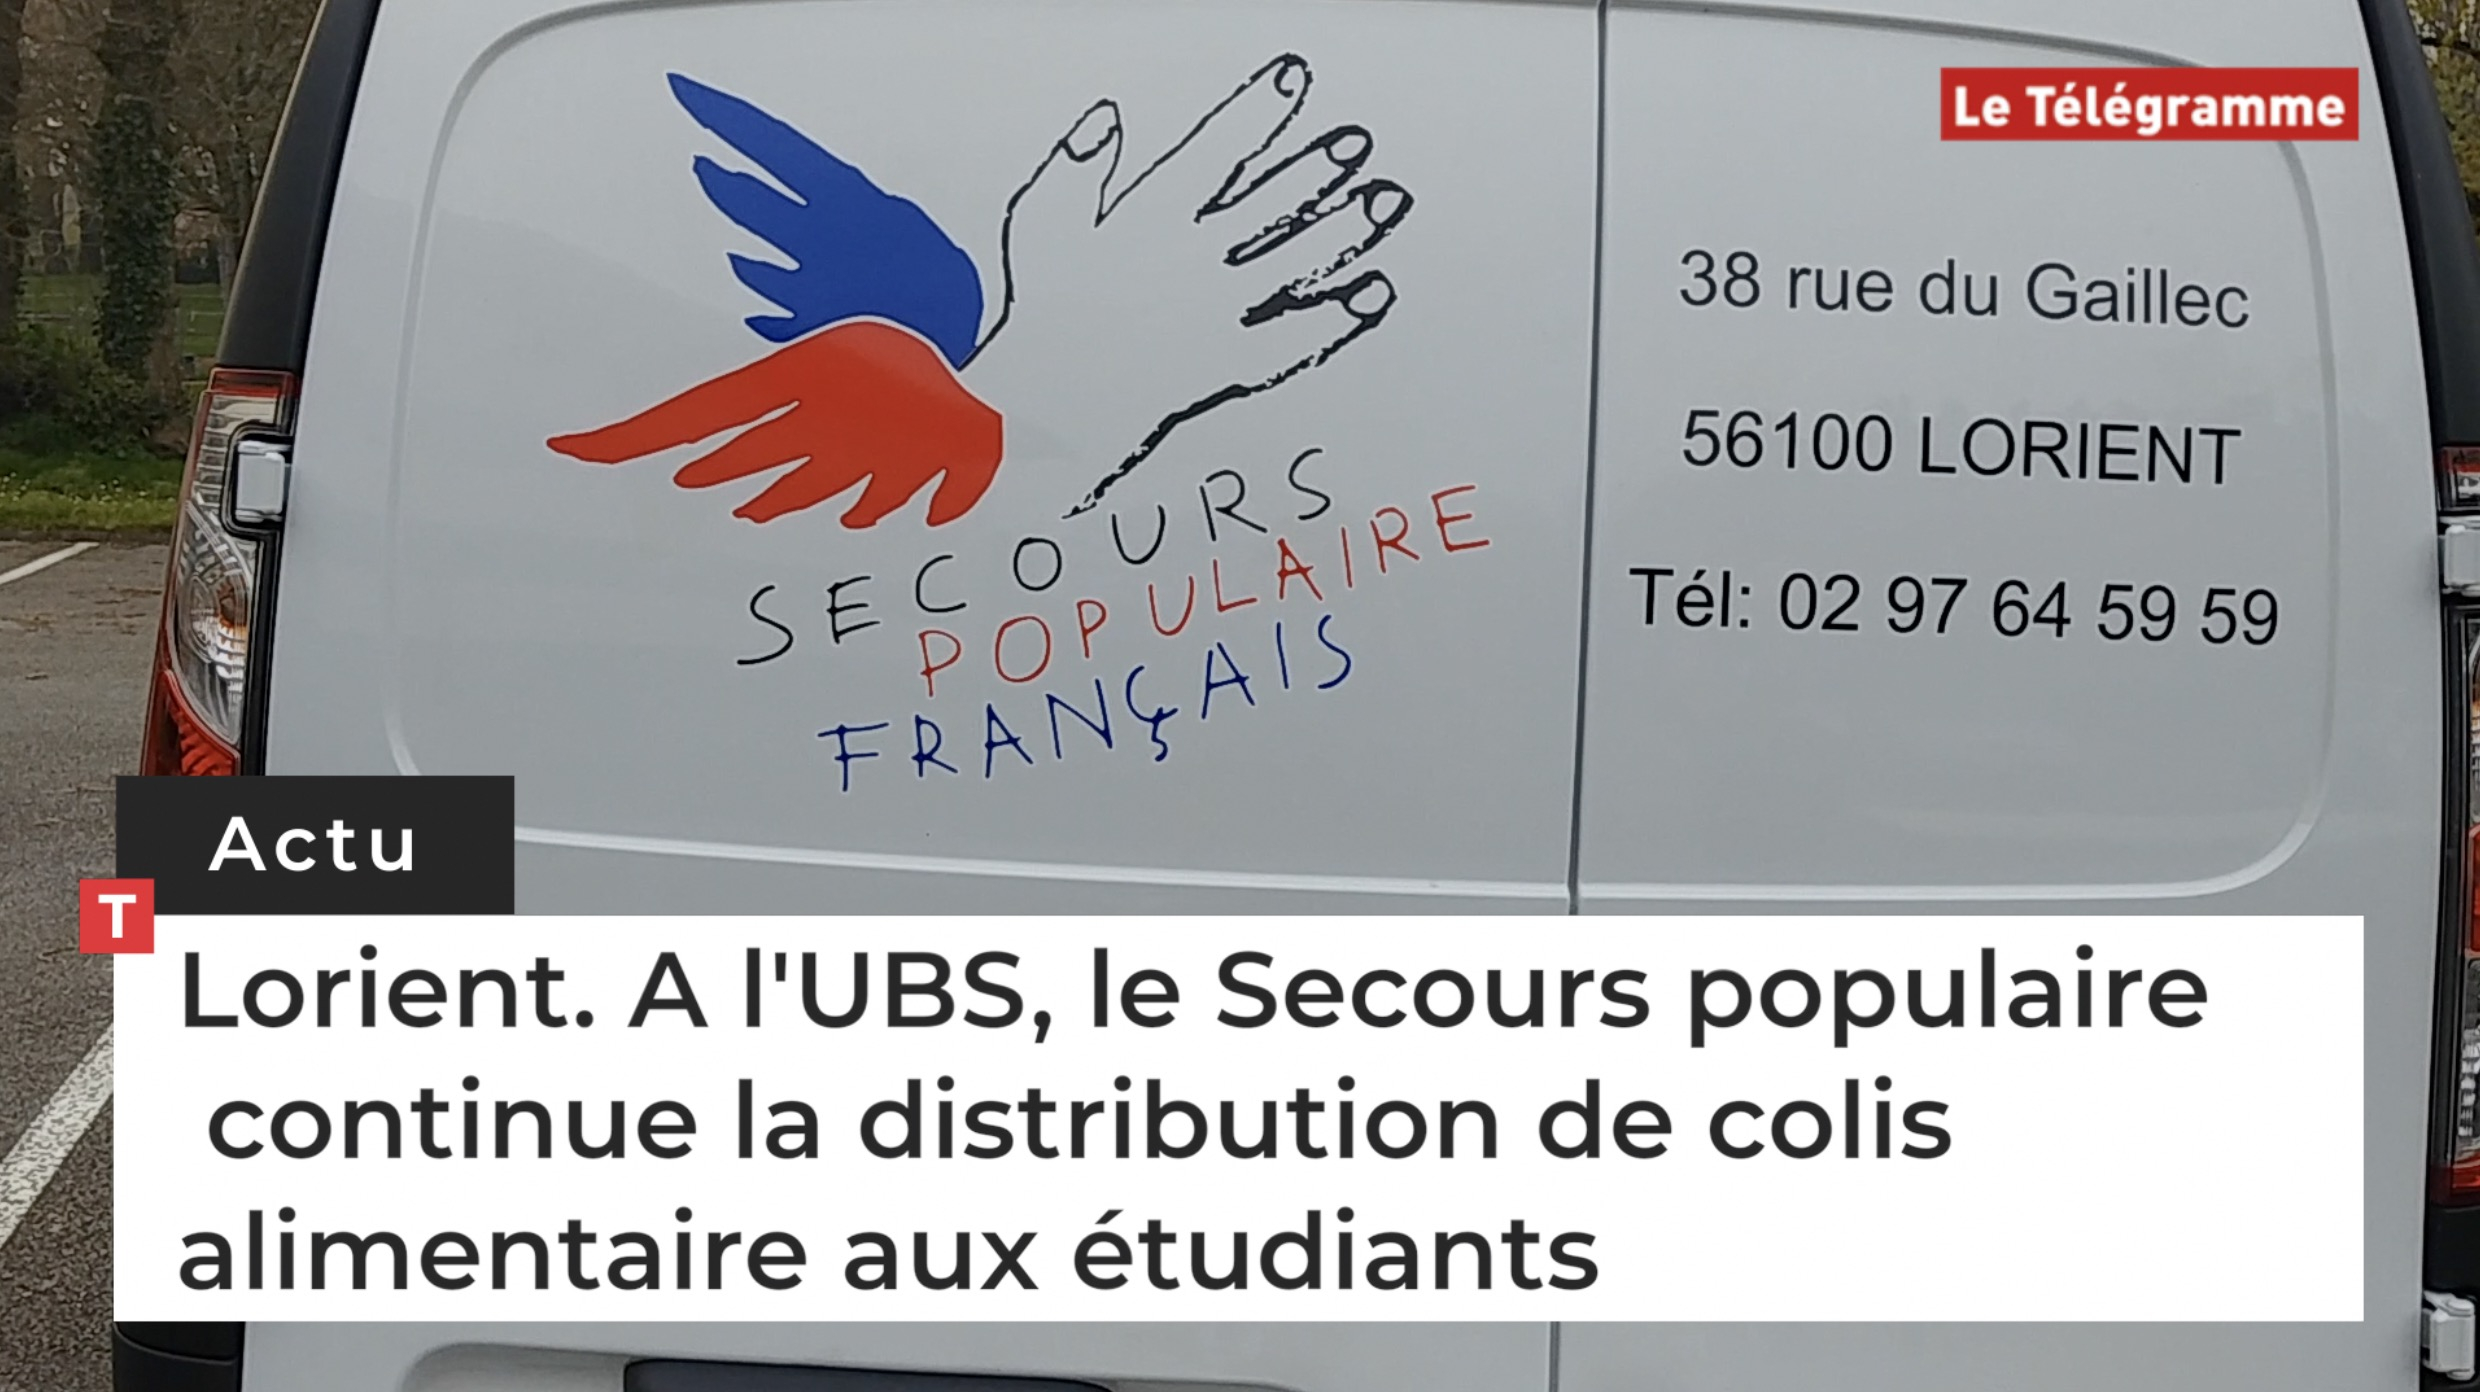 Lorient. A l'UBS, le Secours populaire continue la distribution de colis alimentaire aux étudiants (Le Télégramme)